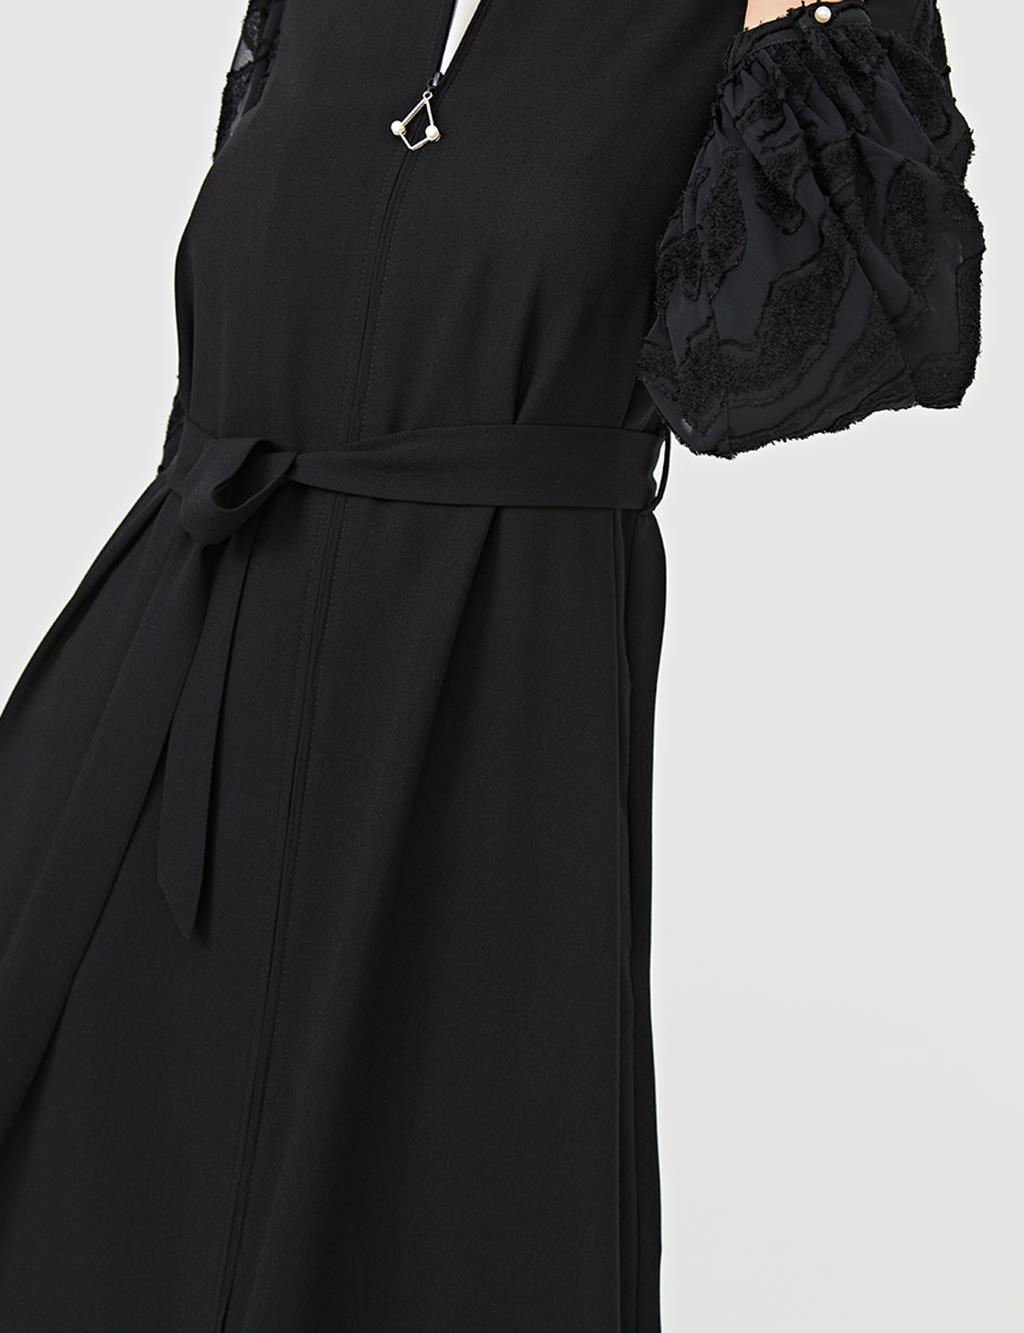 Belted Jacquard Wear & Go B21 25036 Black